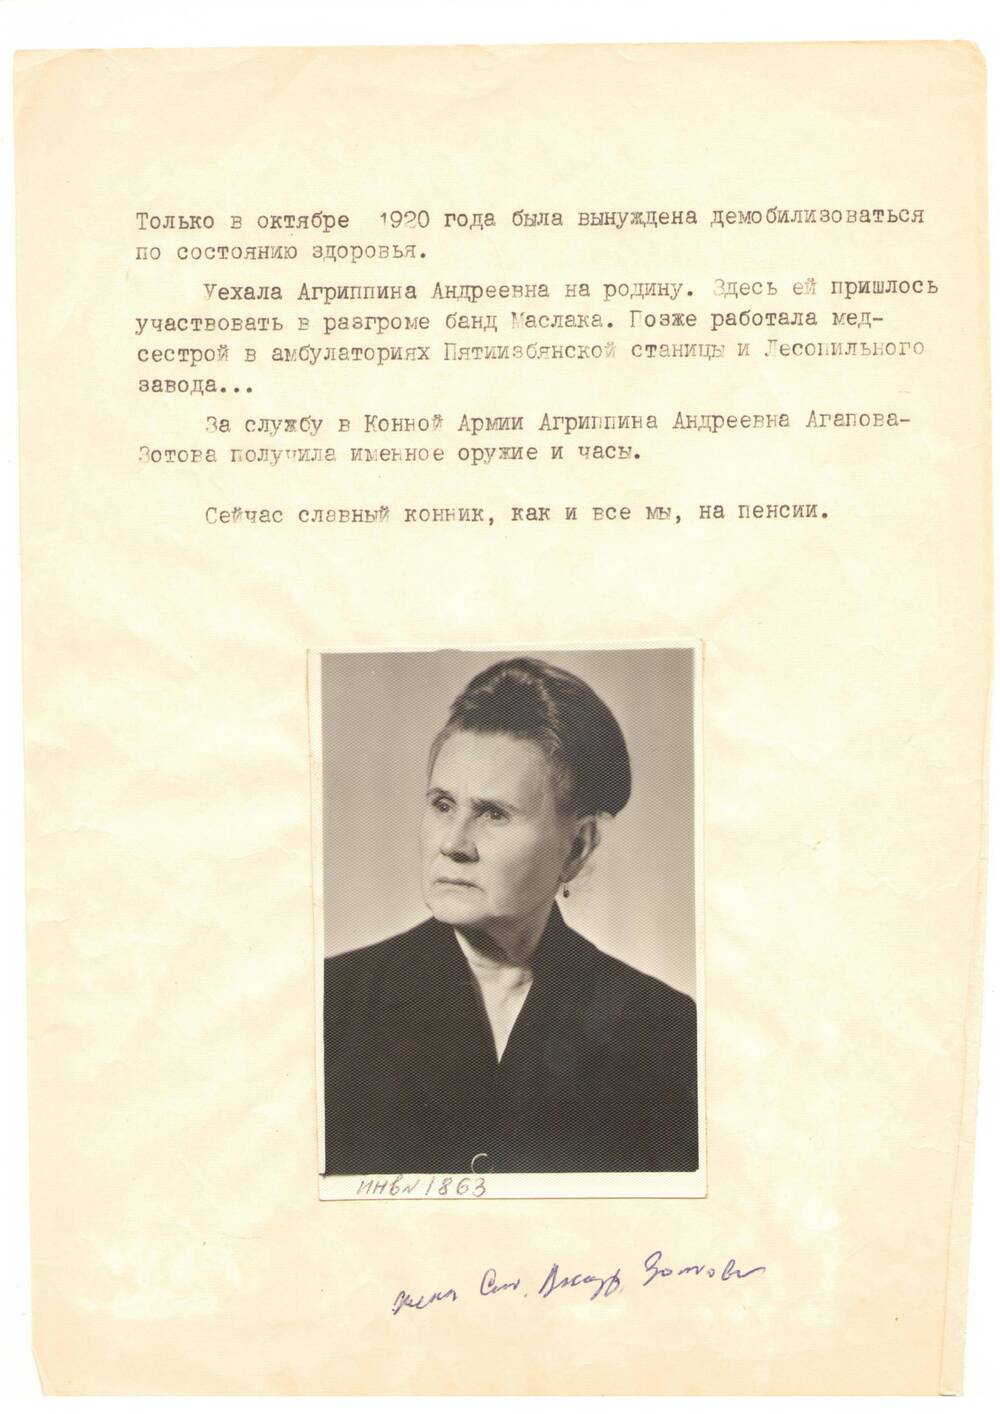 Фото черно-белое, погрудное Агаповой-Зотовой А. А. –  ветерана  I Конной Армии, 1955